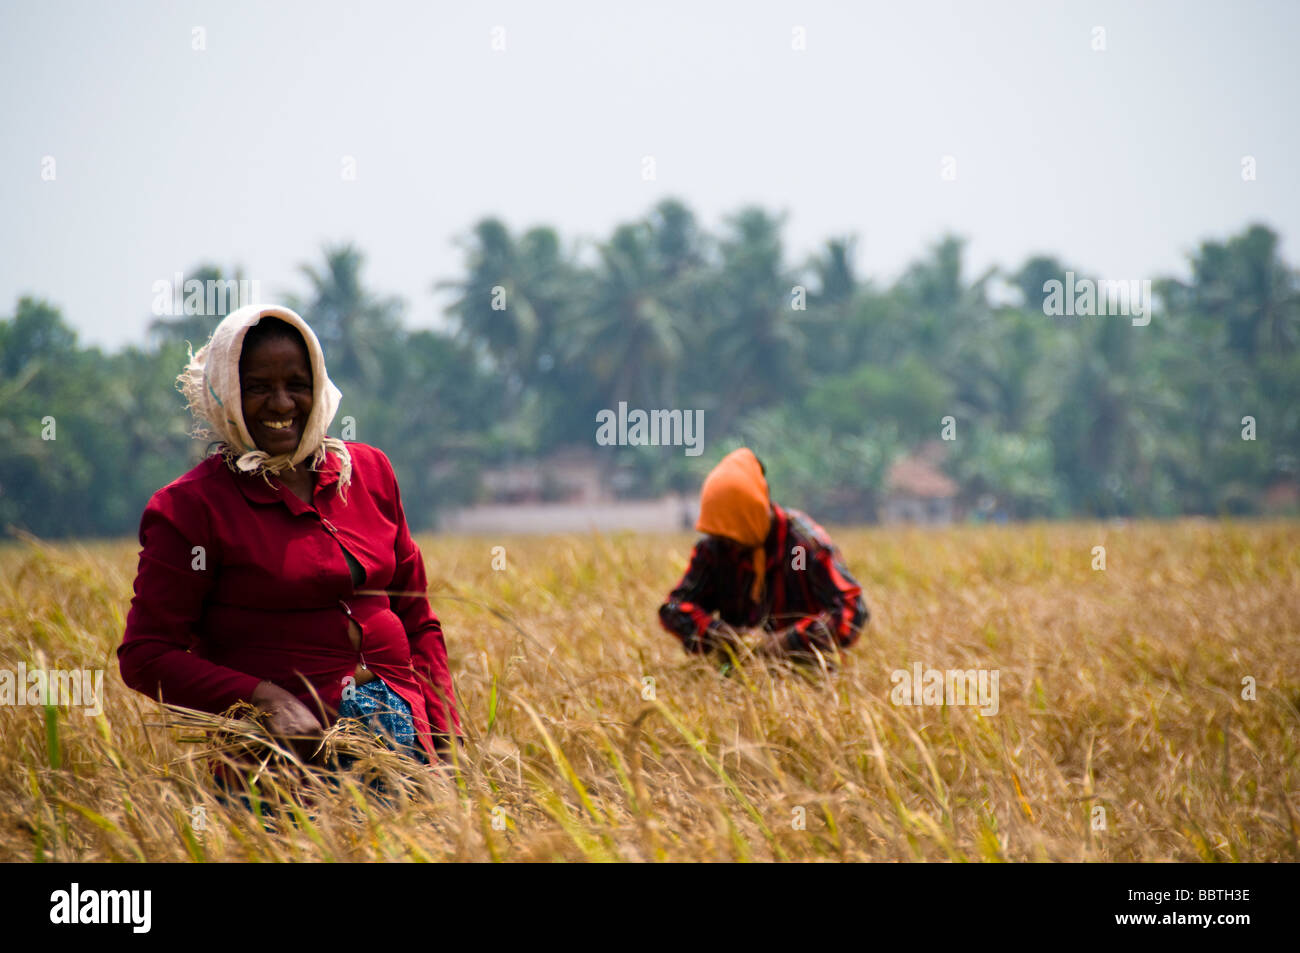 Mujer cosechando arroz en los arrozales, India Foto de stock